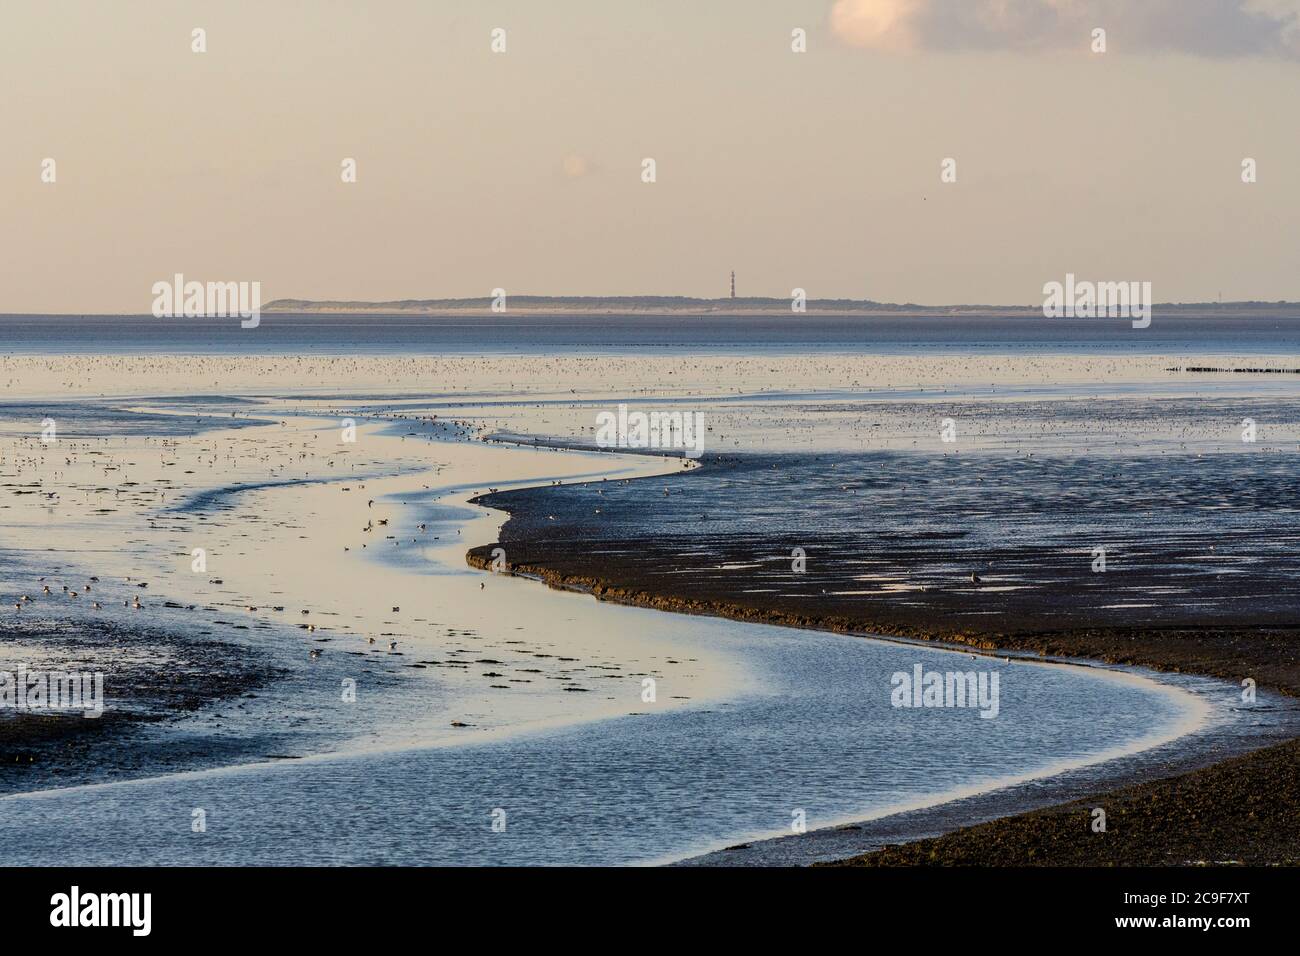 Corriente de marea serpenteante y marismas del mar de Wadden en la costa norte de Holanda durante la marea baja. Foto de stock